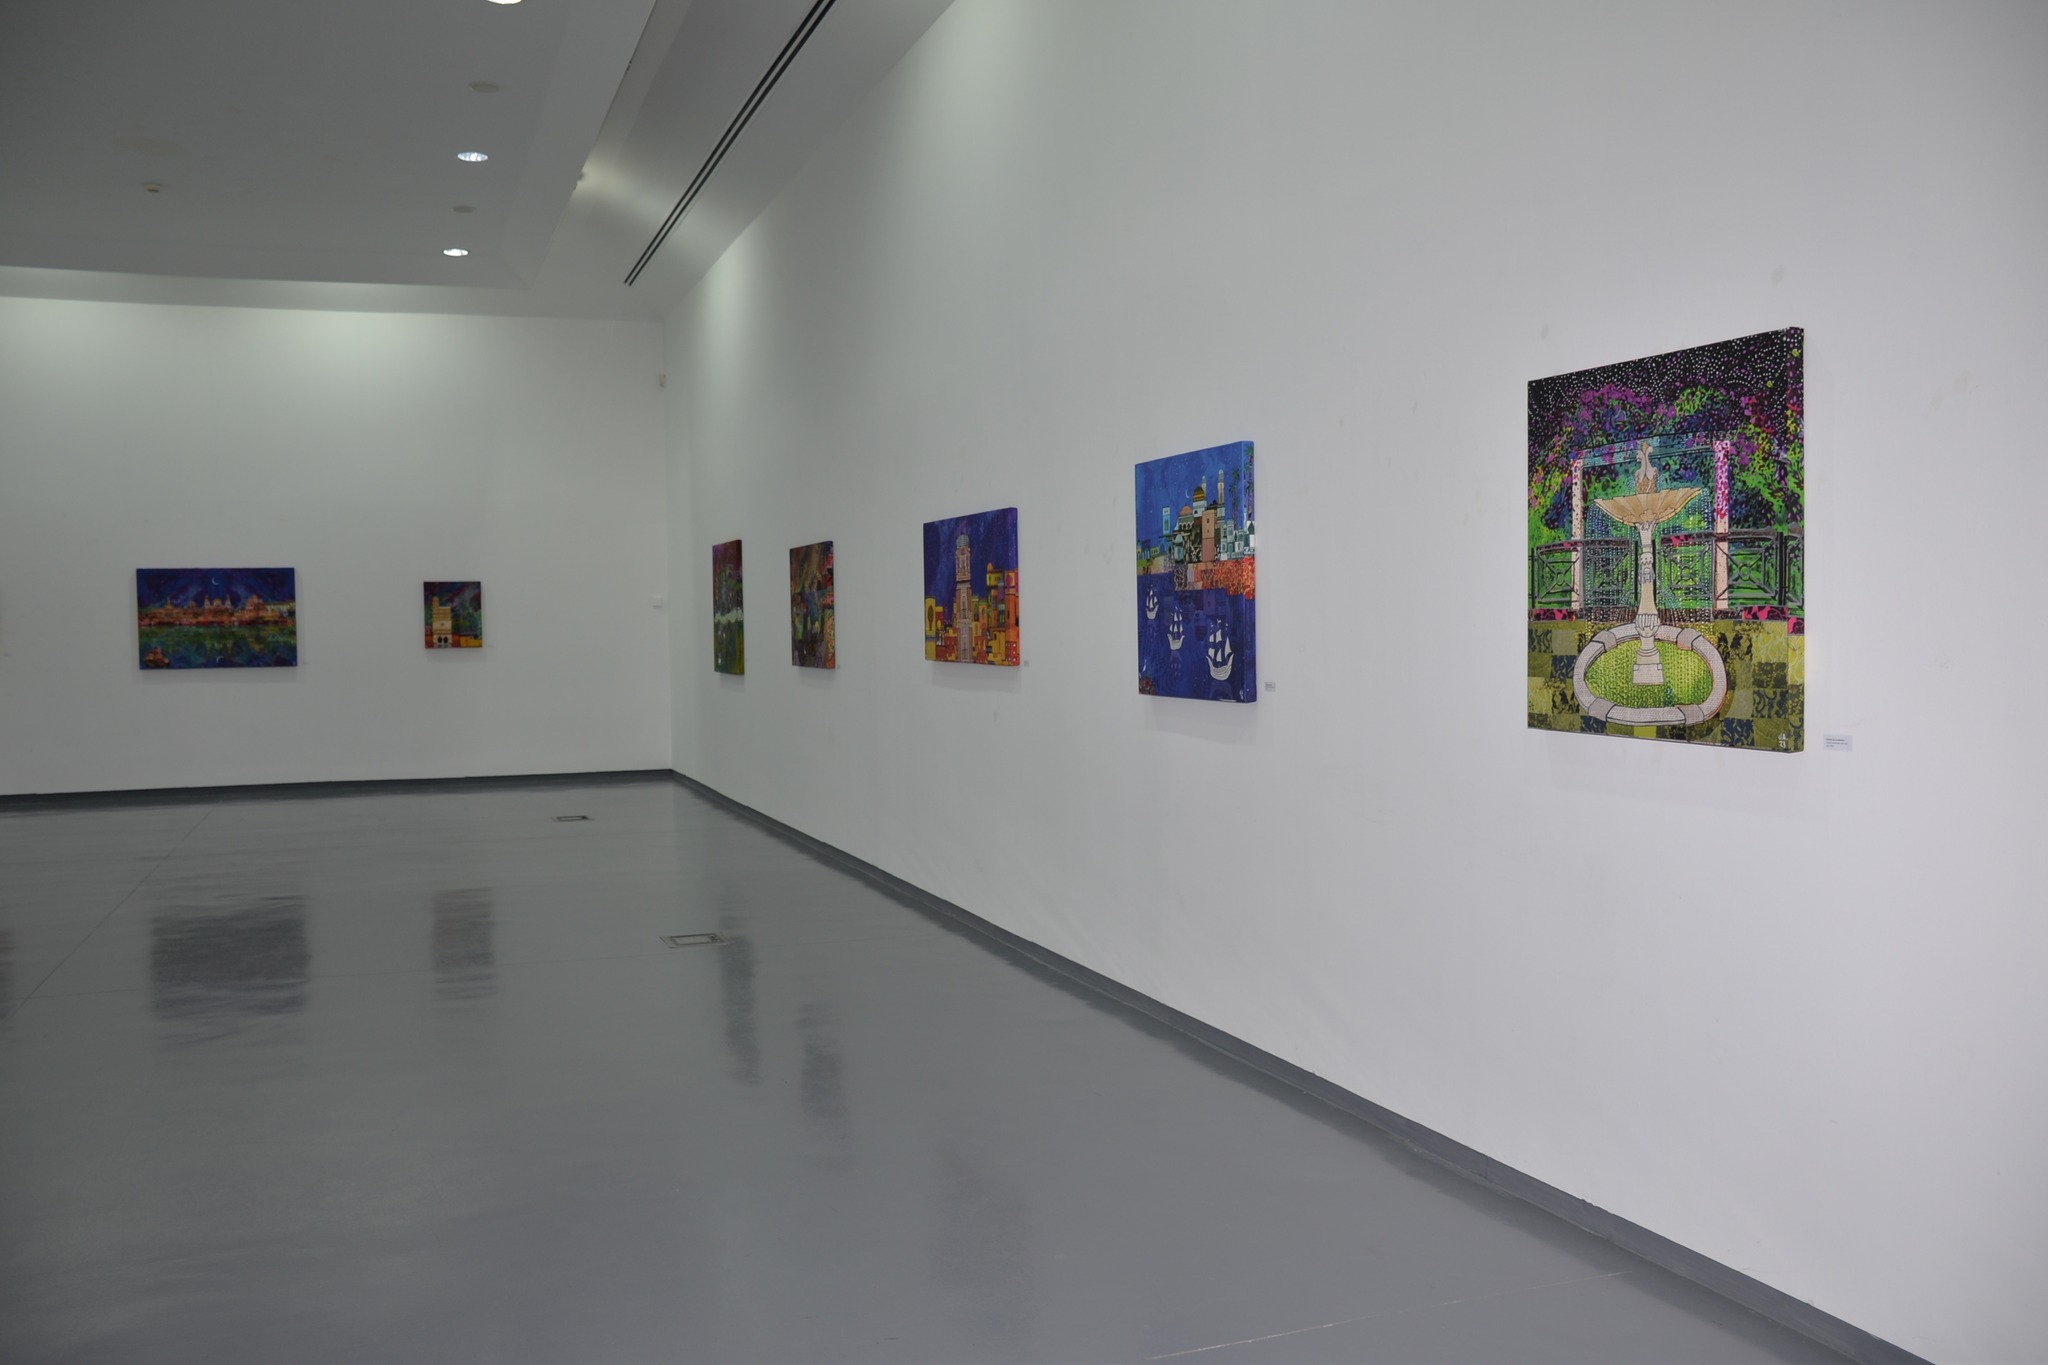 Exposição “Qadis – 1001 Noches” inaugurada no Centro de Artes